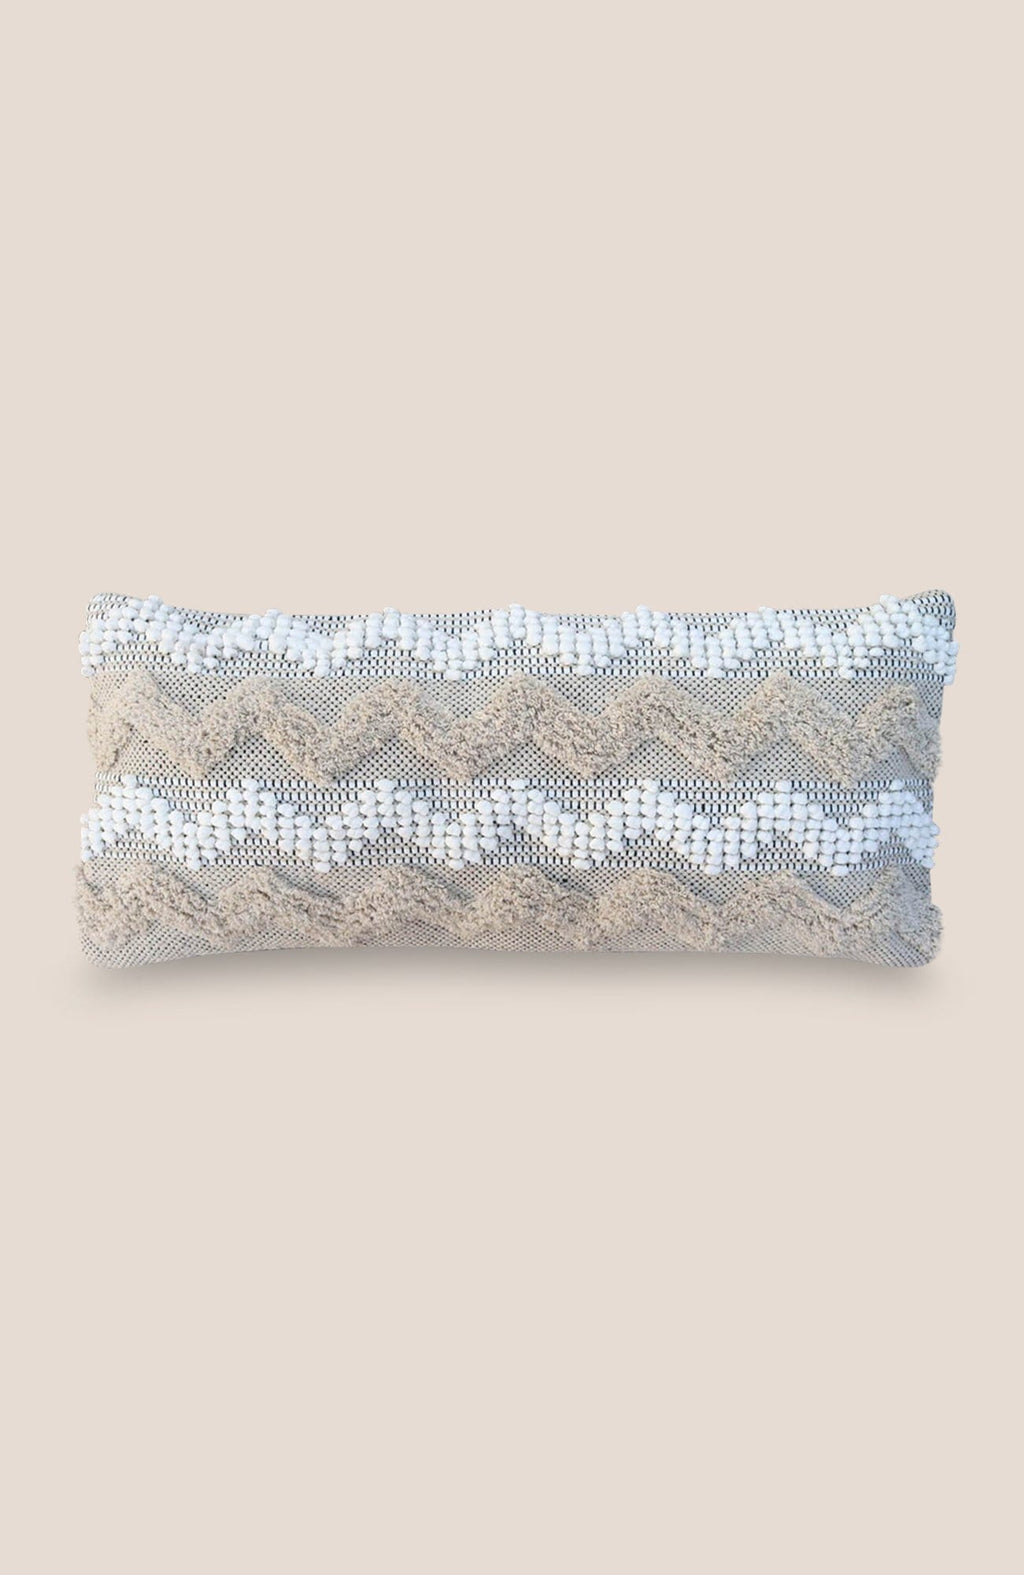 Pillow Cover Zen (rectangular) - Home Decor | Shop Baskets, Ceramics, Pillows, Rugs & Wall Hangs online